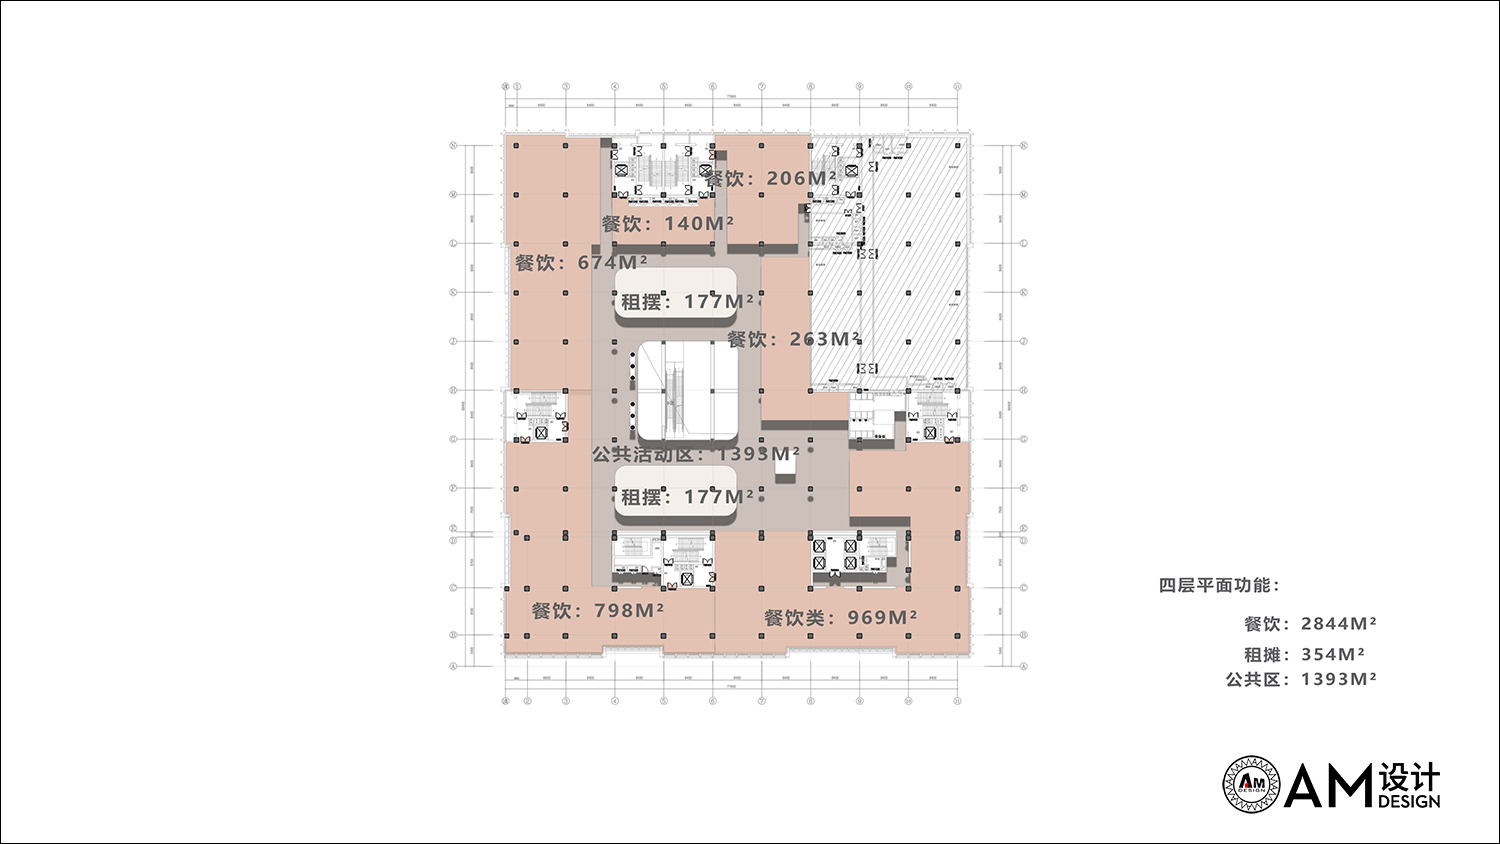 AM DESIGN | 4th floor plan of Beijing jhg jinhuigang commercial complex